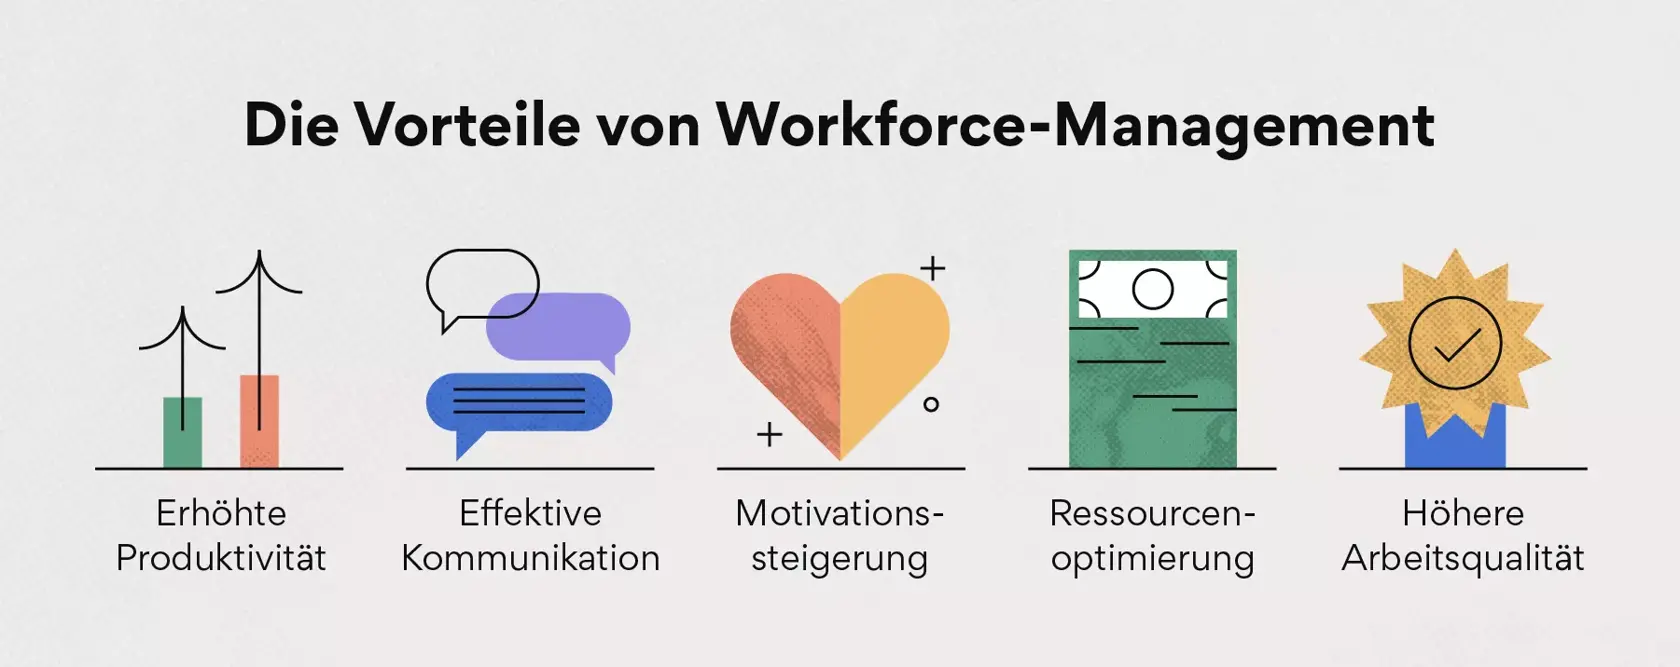 Die Vorteile von Workforce-Management